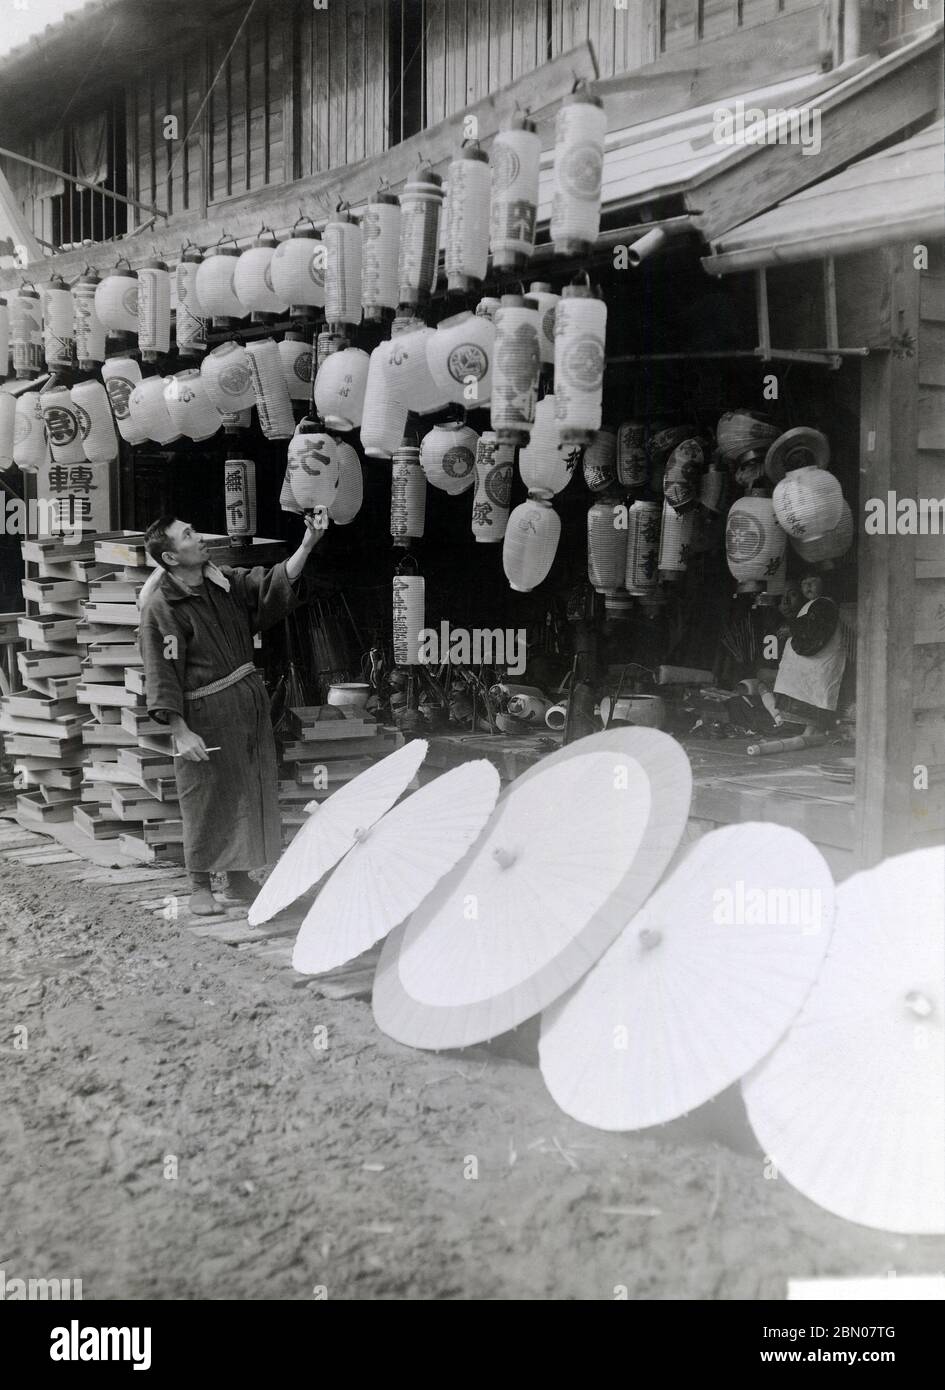 [ années 1920 Japon - Lanterne et parasol japonais ] — Boutique vendant lanternes et parasols en papier. Comme les deux étaient en papier, ils étaient habituellement produits dans le même atelier. imprimé gélatine argent du xxe siècle. Banque D'Images